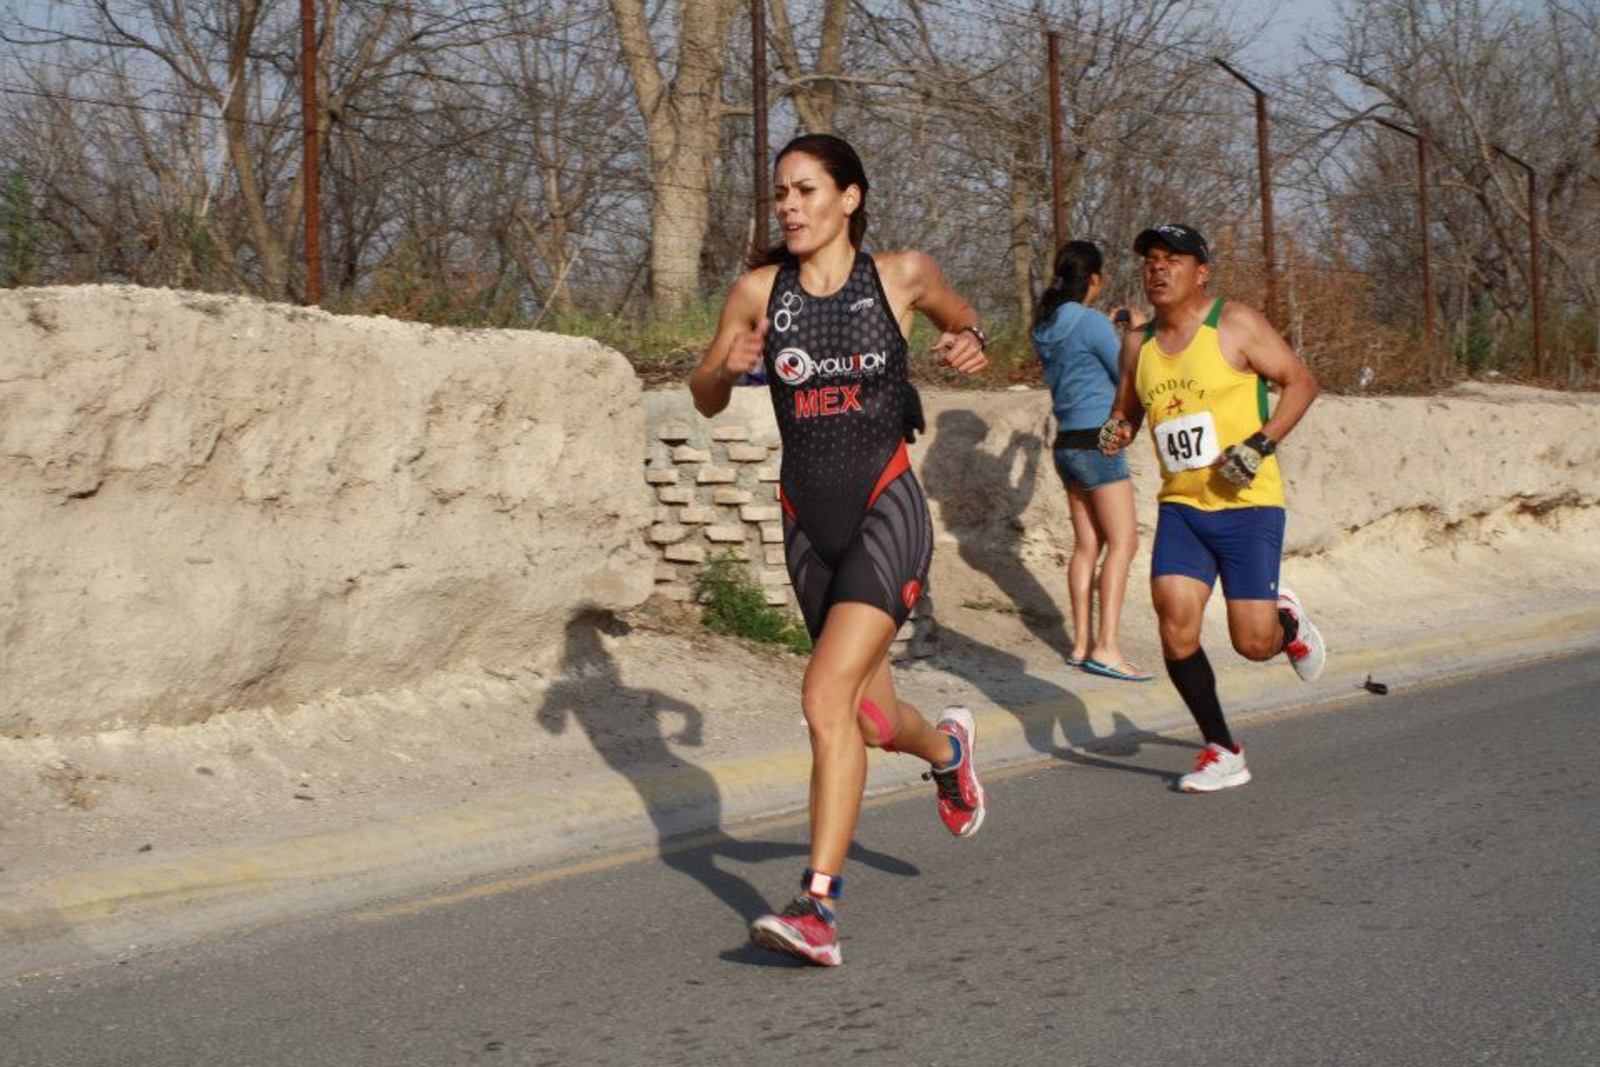 Maratonistas, triatletas y público en general, tomarán parte en la dura competencia, que iniciará sobre la carretera Torreón-Saltillo.